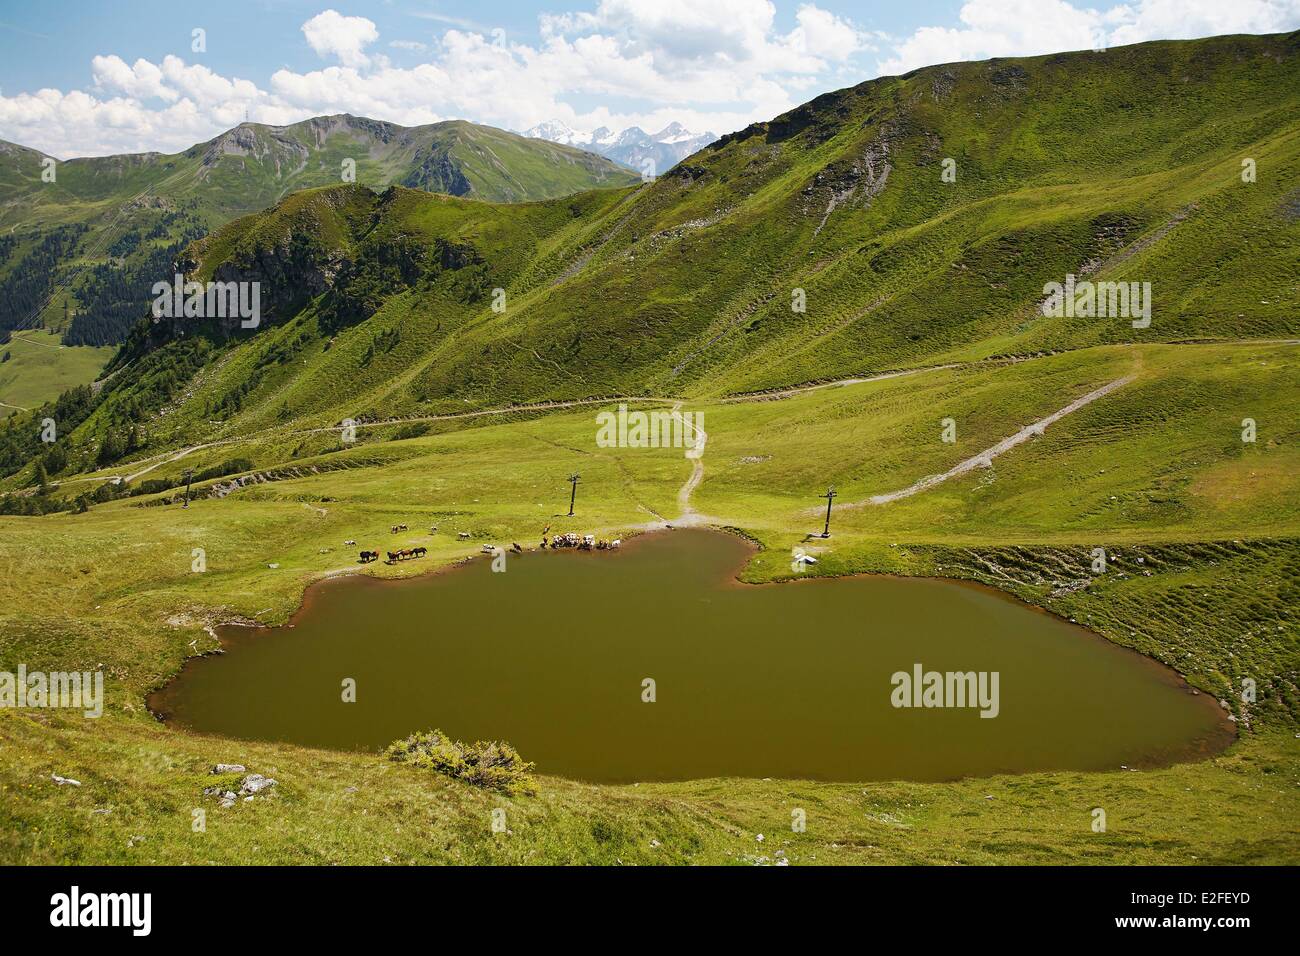 Austria, Land of Salzburg, Kitzbuhel Alps, Saalbach Hinterglemm, Saalbach Hinterglemm valley Stock Photo